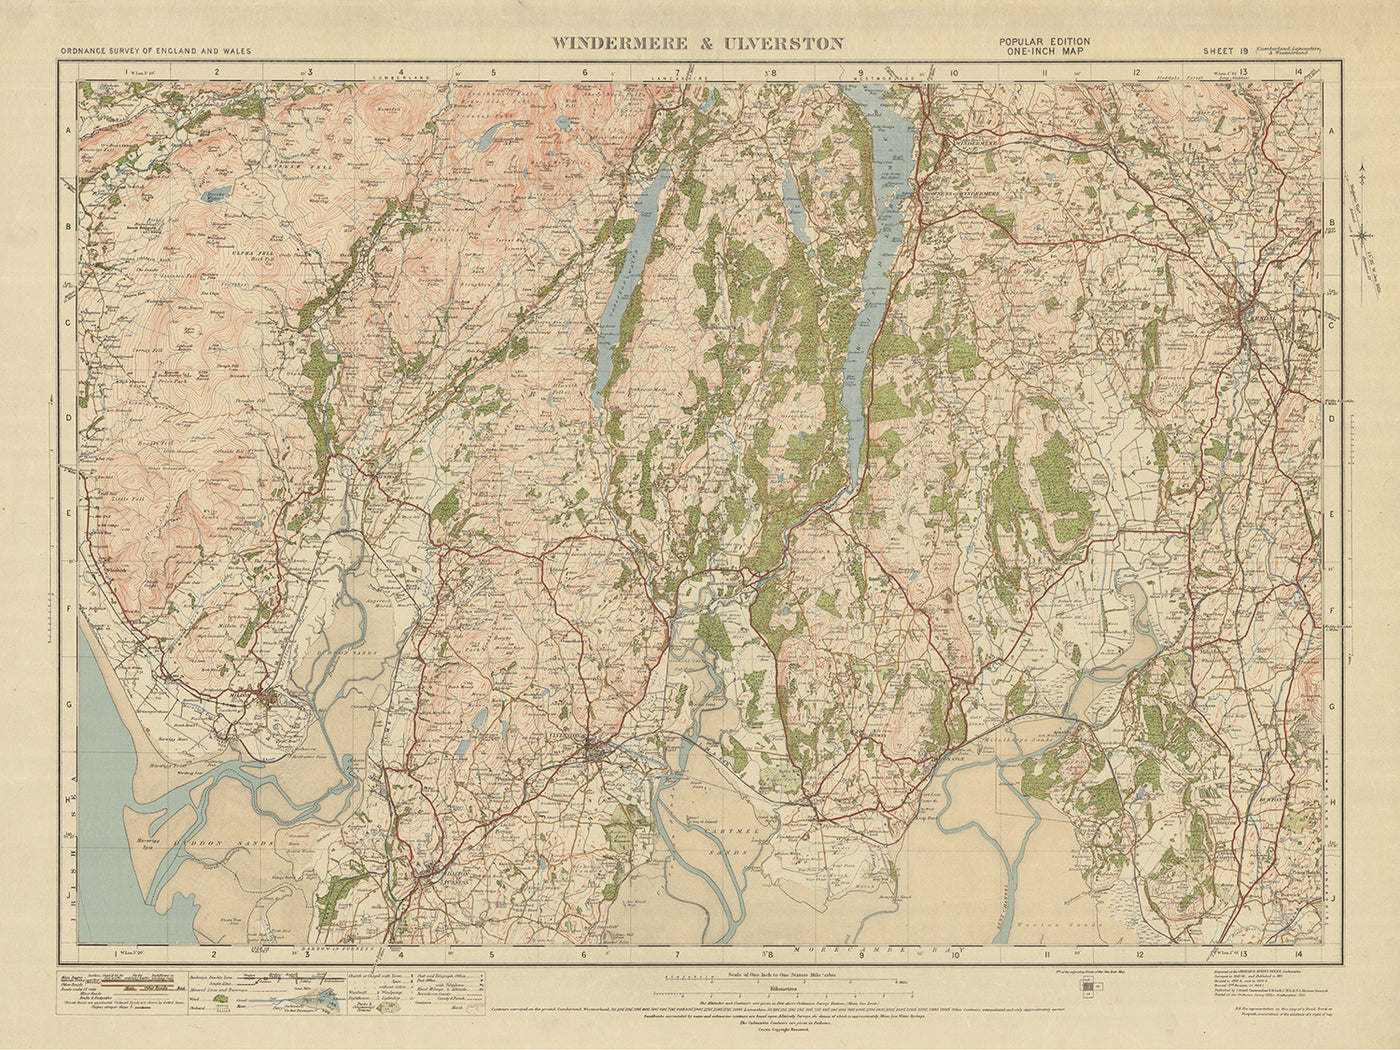 Mapa antiguo de Ordnance Survey, hoja 19 - Windermere y Ulverston, 1925: Dalton-in-Furness, Millom, Grange-over-Sands, Kendal y Parque Nacional del Distrito de los Lagos.